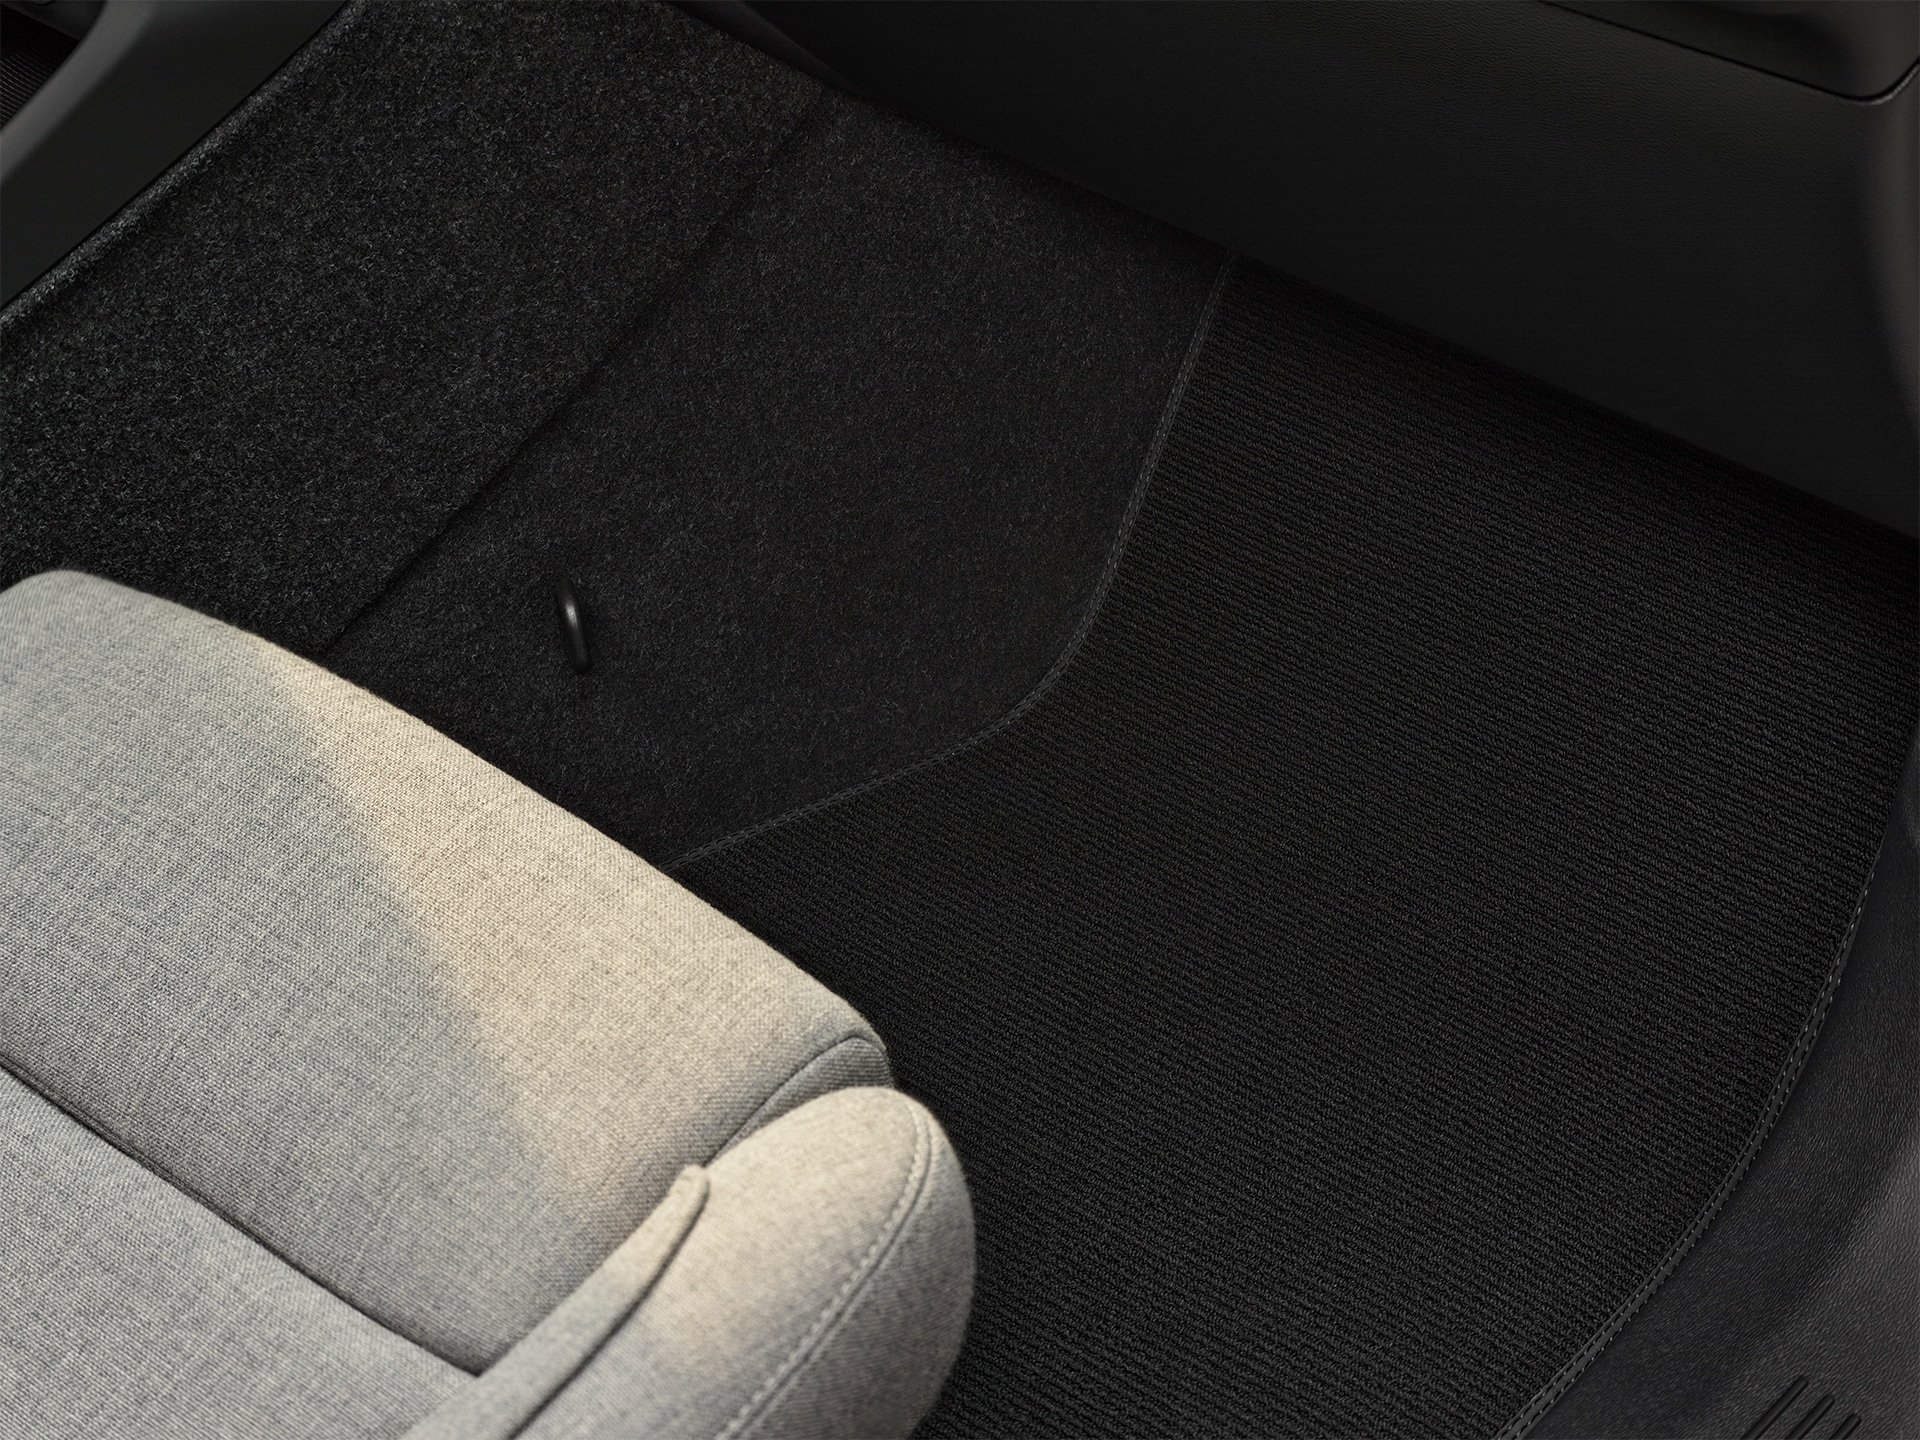 Interior cómodo, versátil y de calidad del Volvo XC40 Recharge híbrido enchufable.